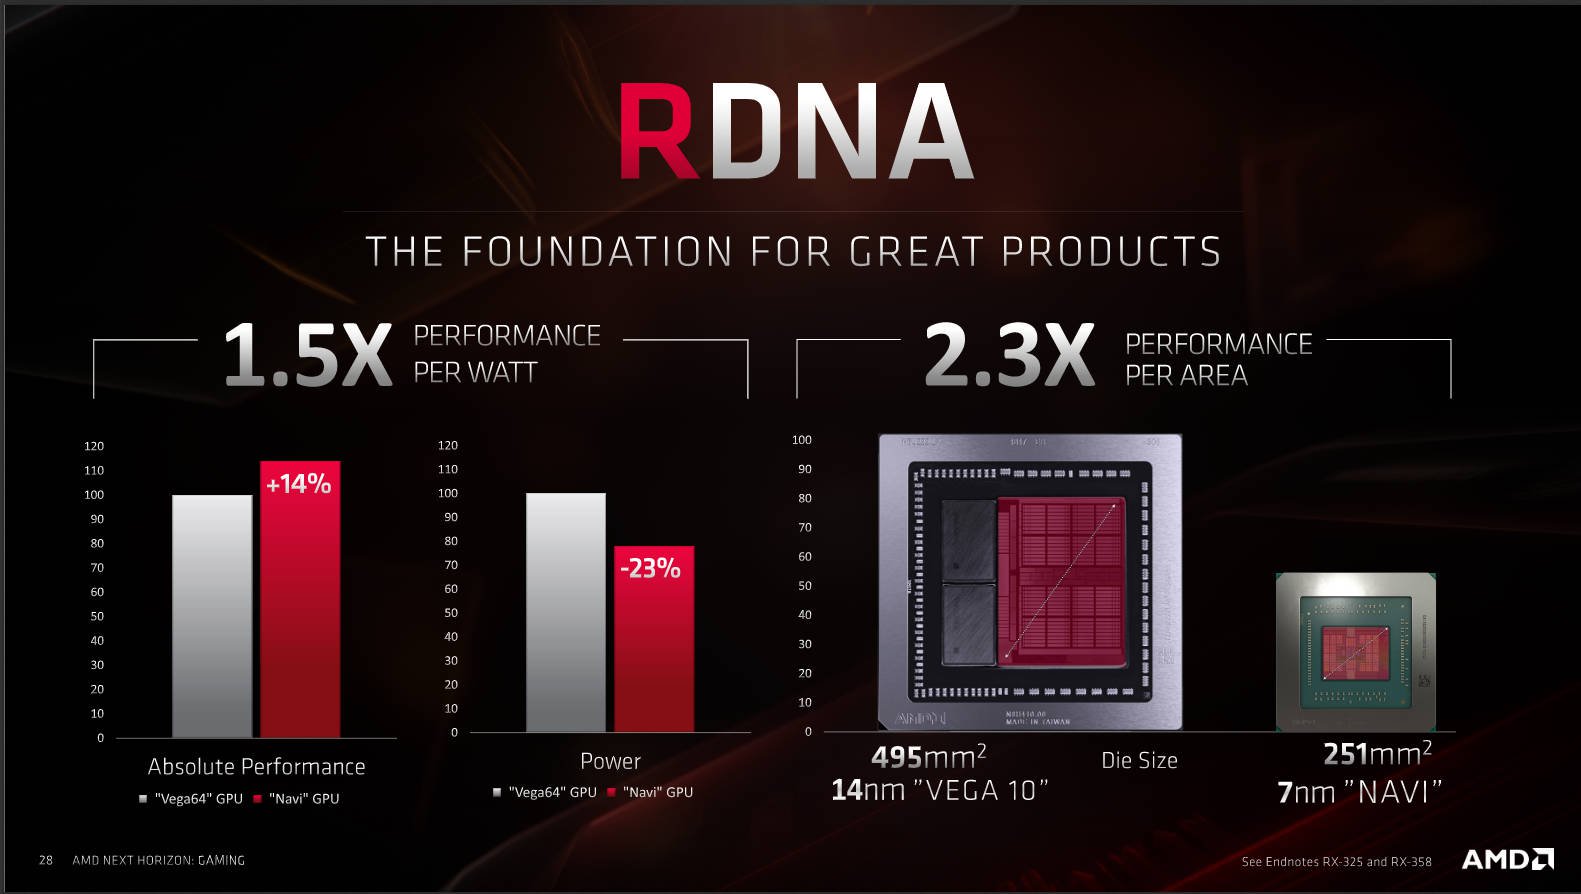 Trải nghiệm AMD RX Radeon 5700 XT: chơi tốt nhiều game ở 2K, xung cao hơn, ít ăn điện hơn đời trước - Hình 9